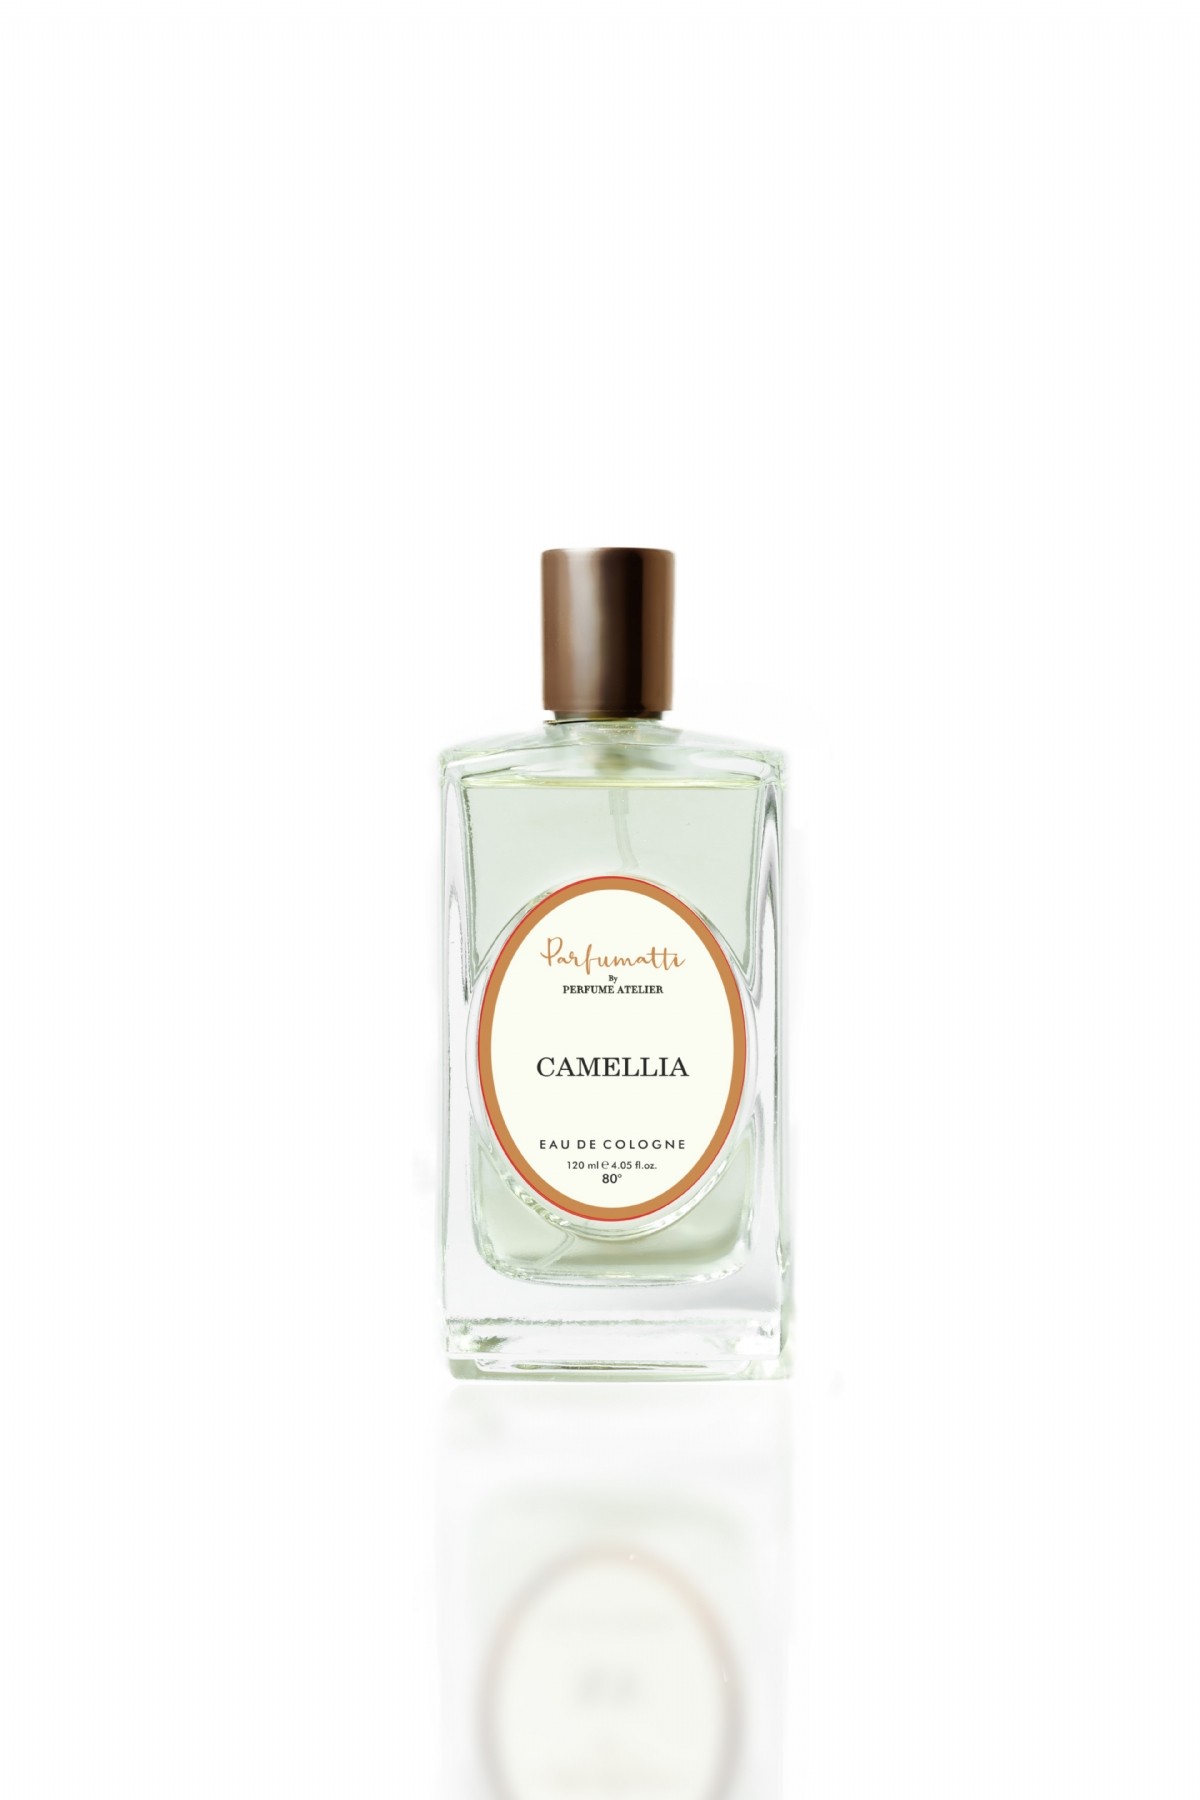 Camellia Eau De Cologne 70˚ main variant image